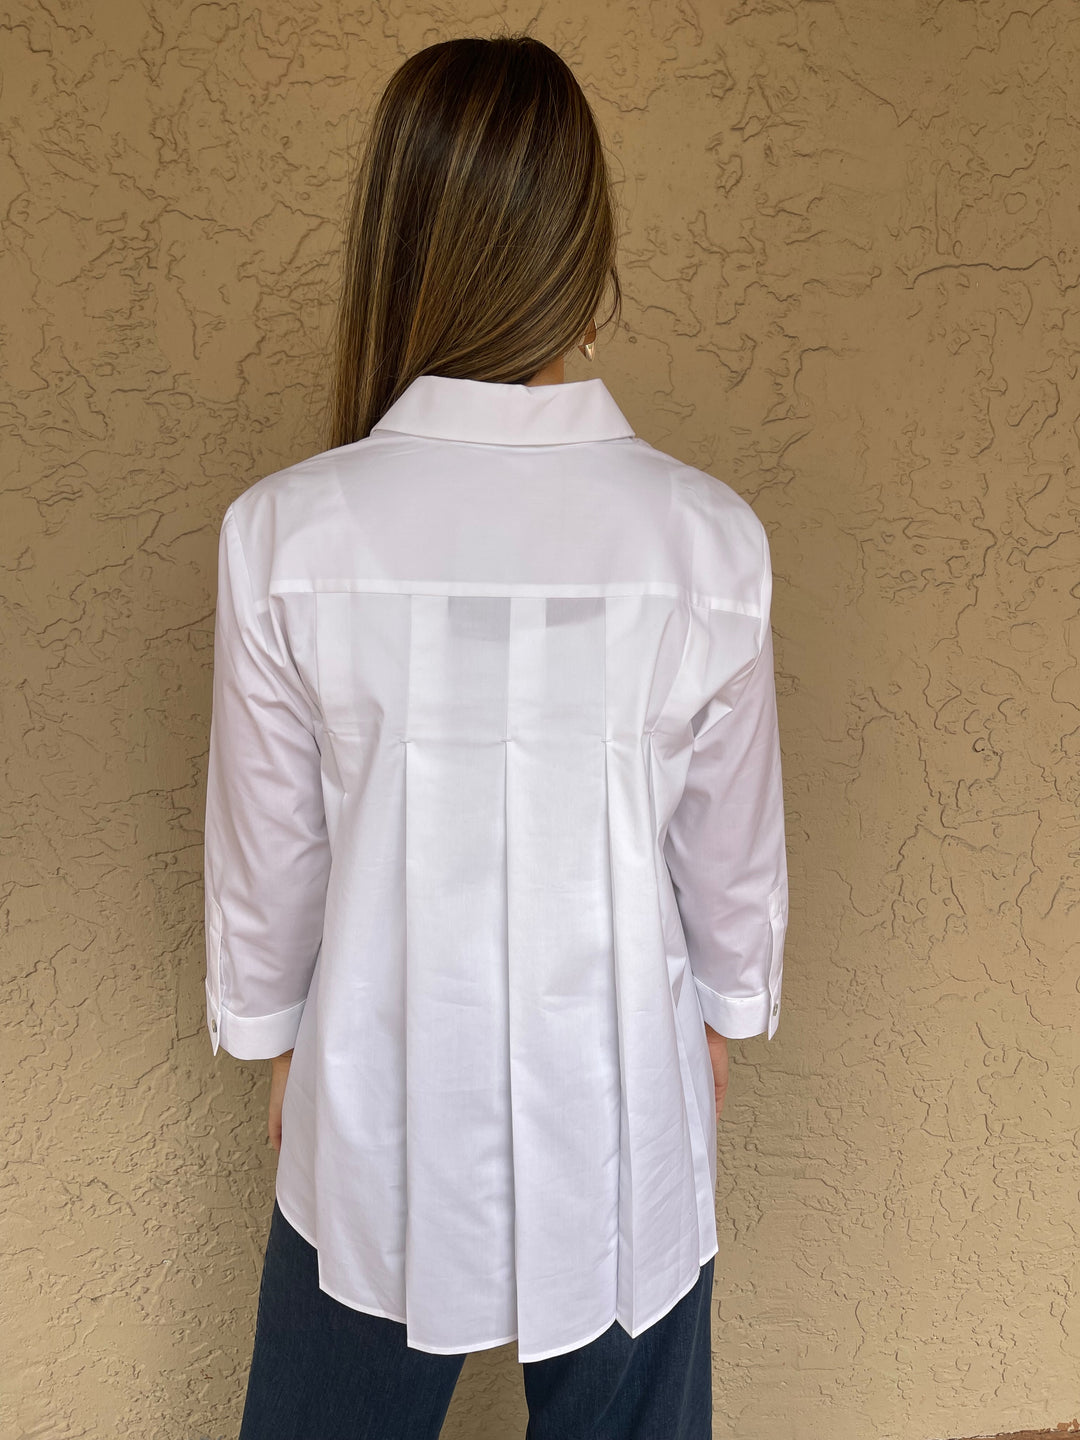 Hinson Wu 3/4 Sleeve Sara Shirt - White